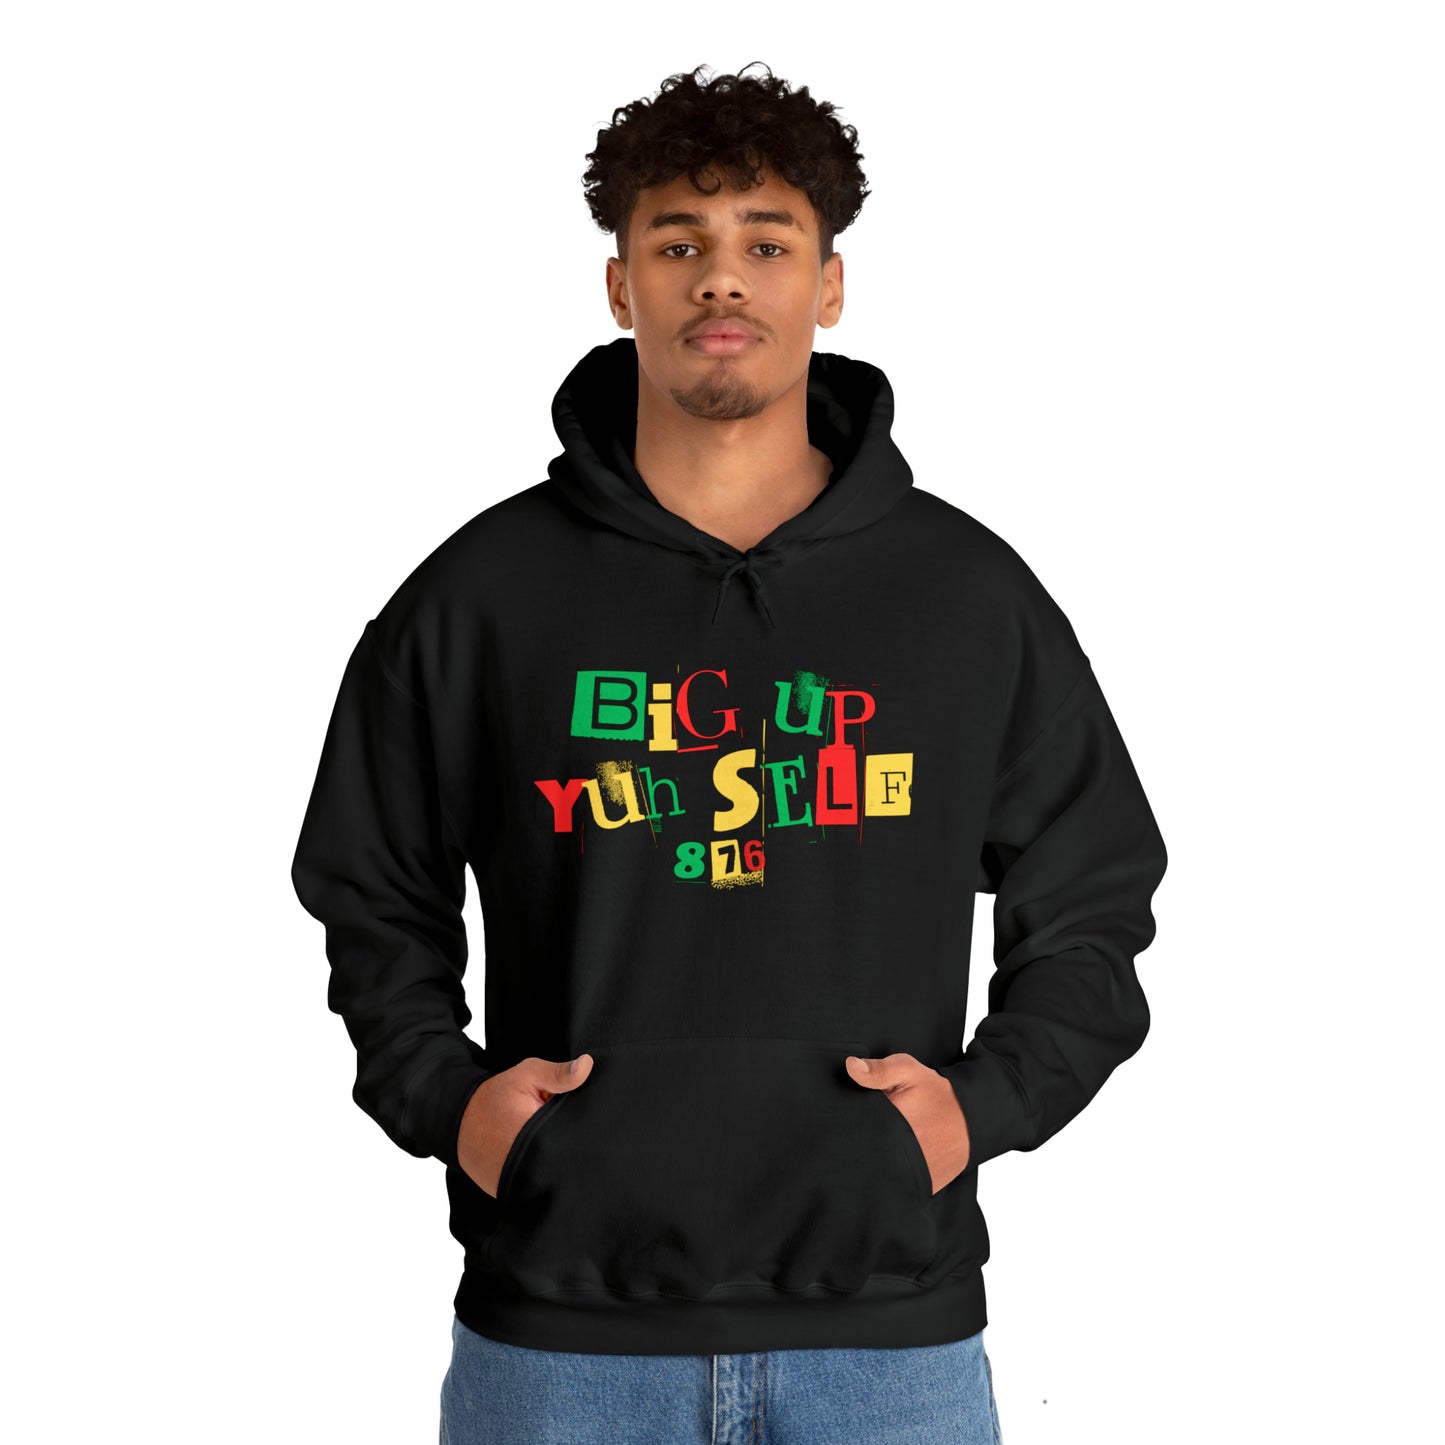 Carib - Big Up Yuh Self Hooded Sweatshirt